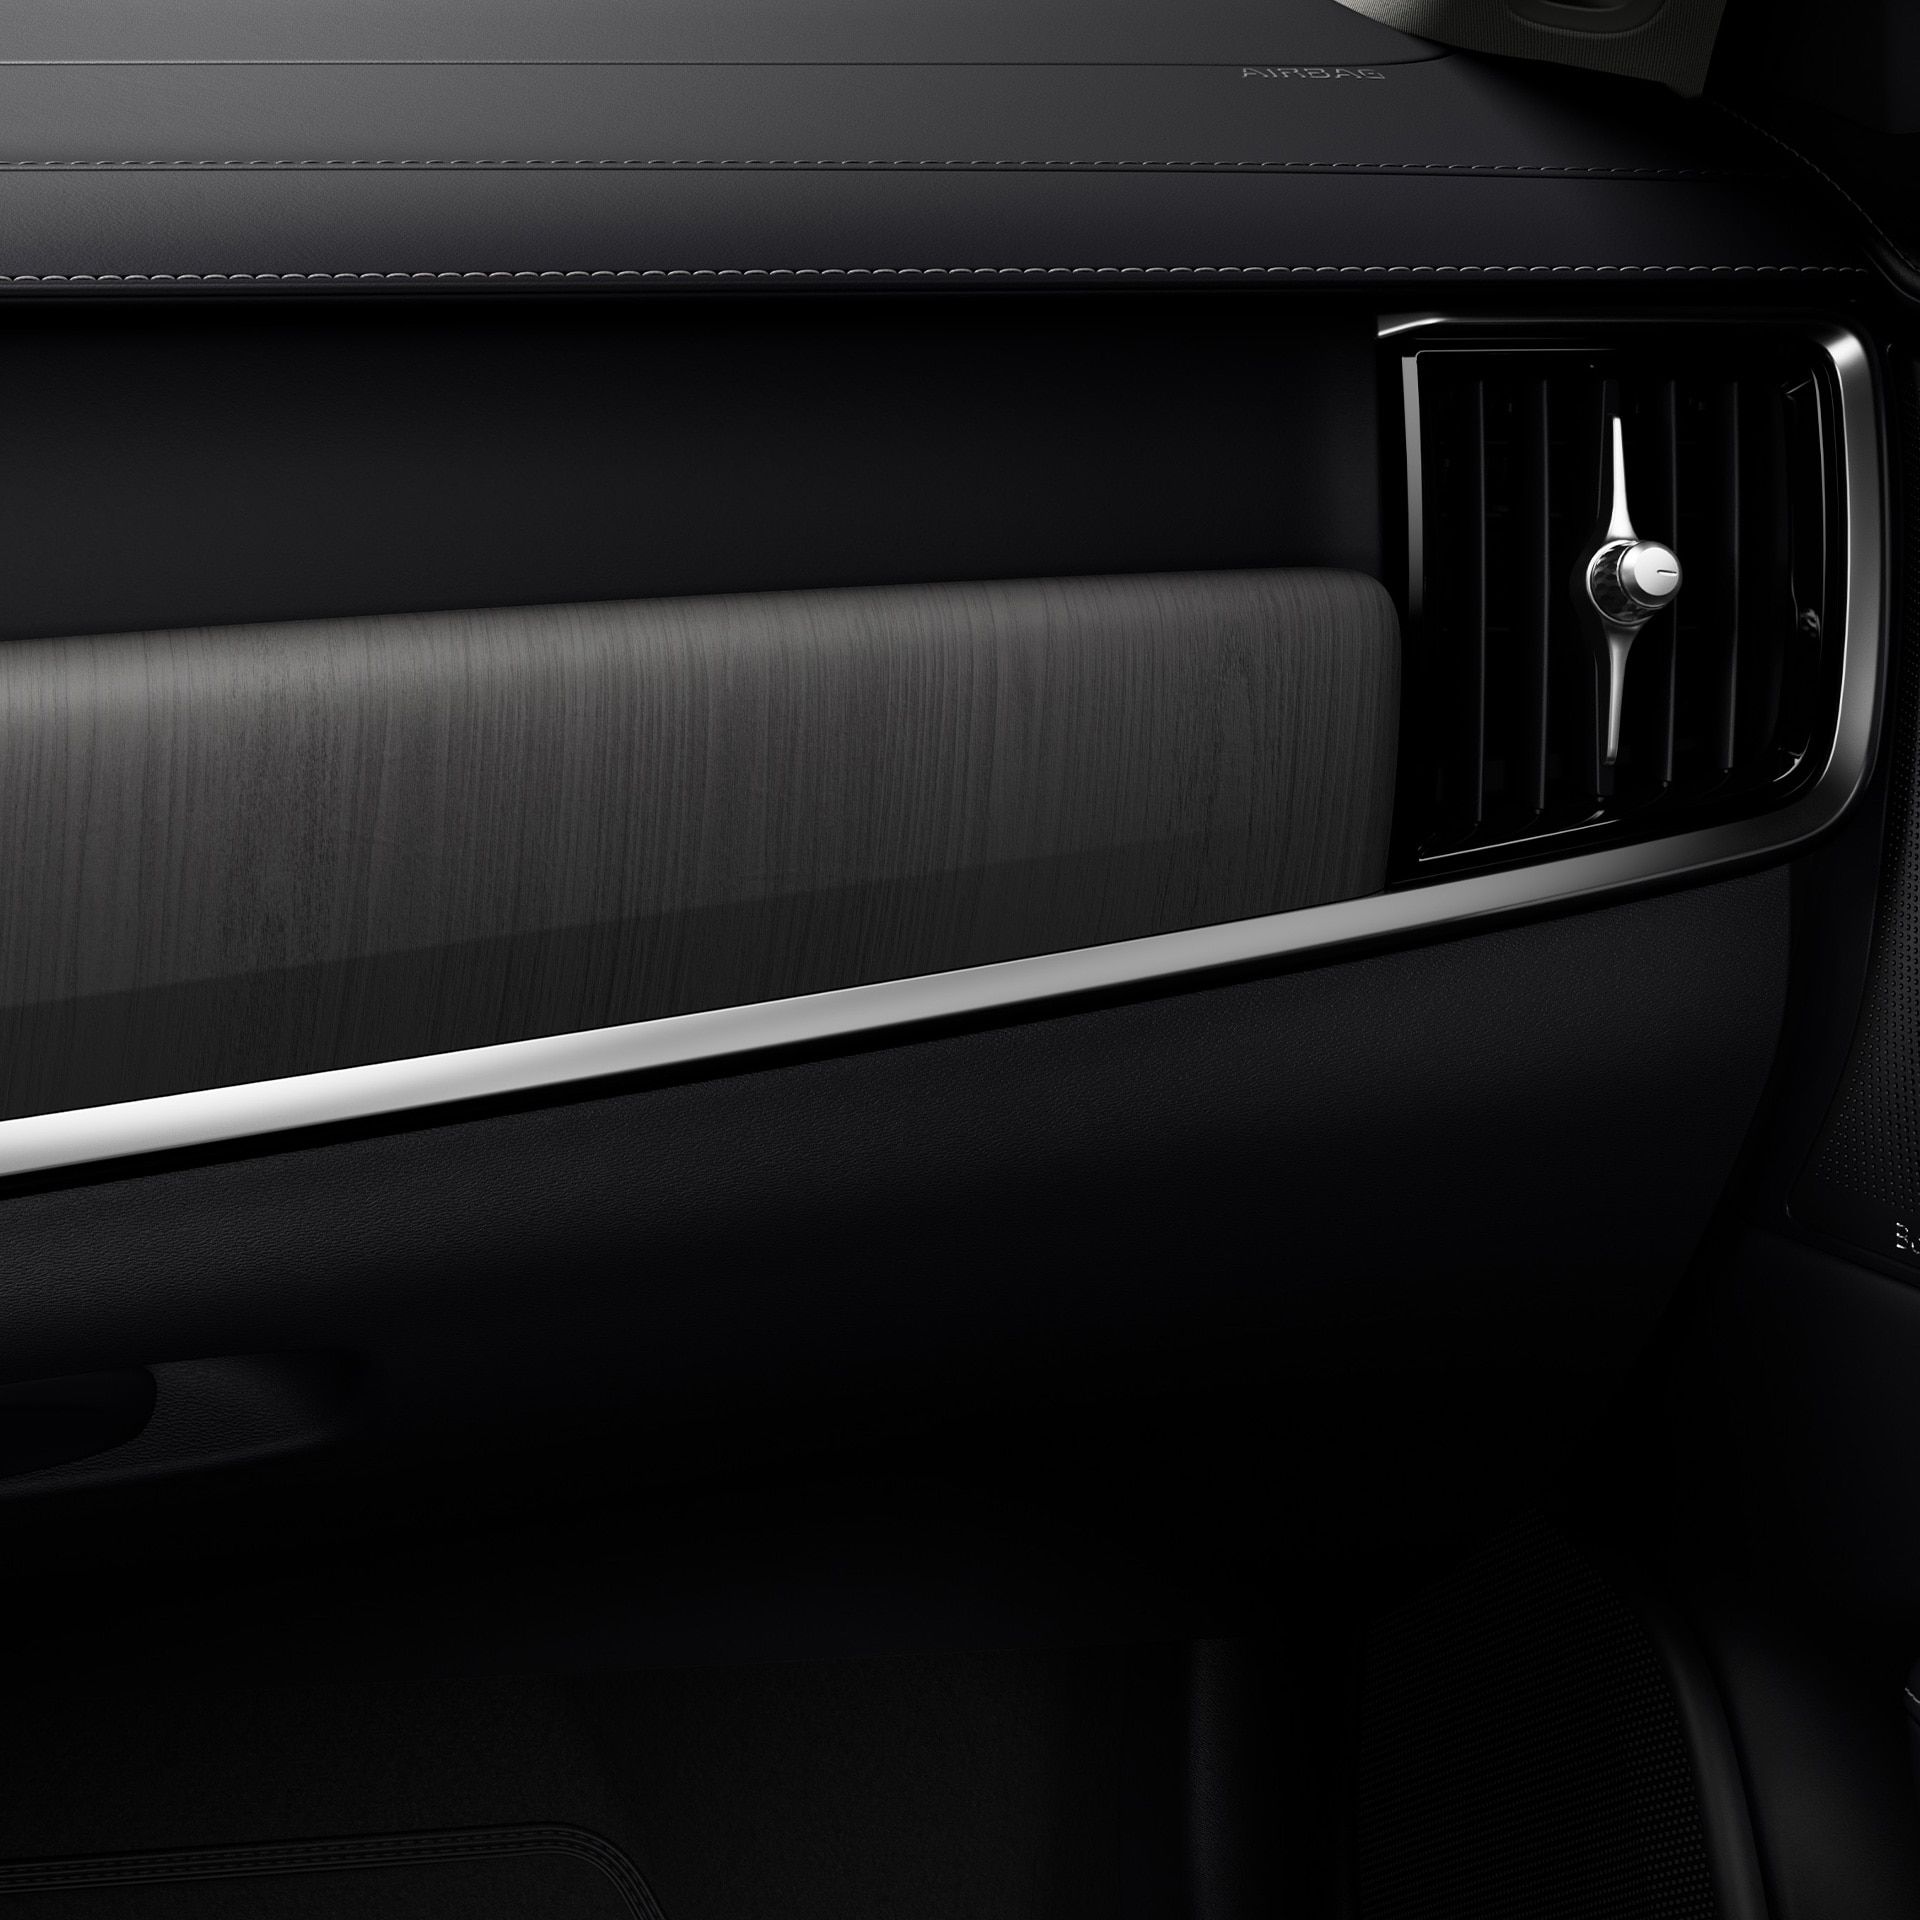 Le purificateur d'air sophistiqué de la Volvo V90 permet aux occupants de la voiture de respirer un air plus sain.